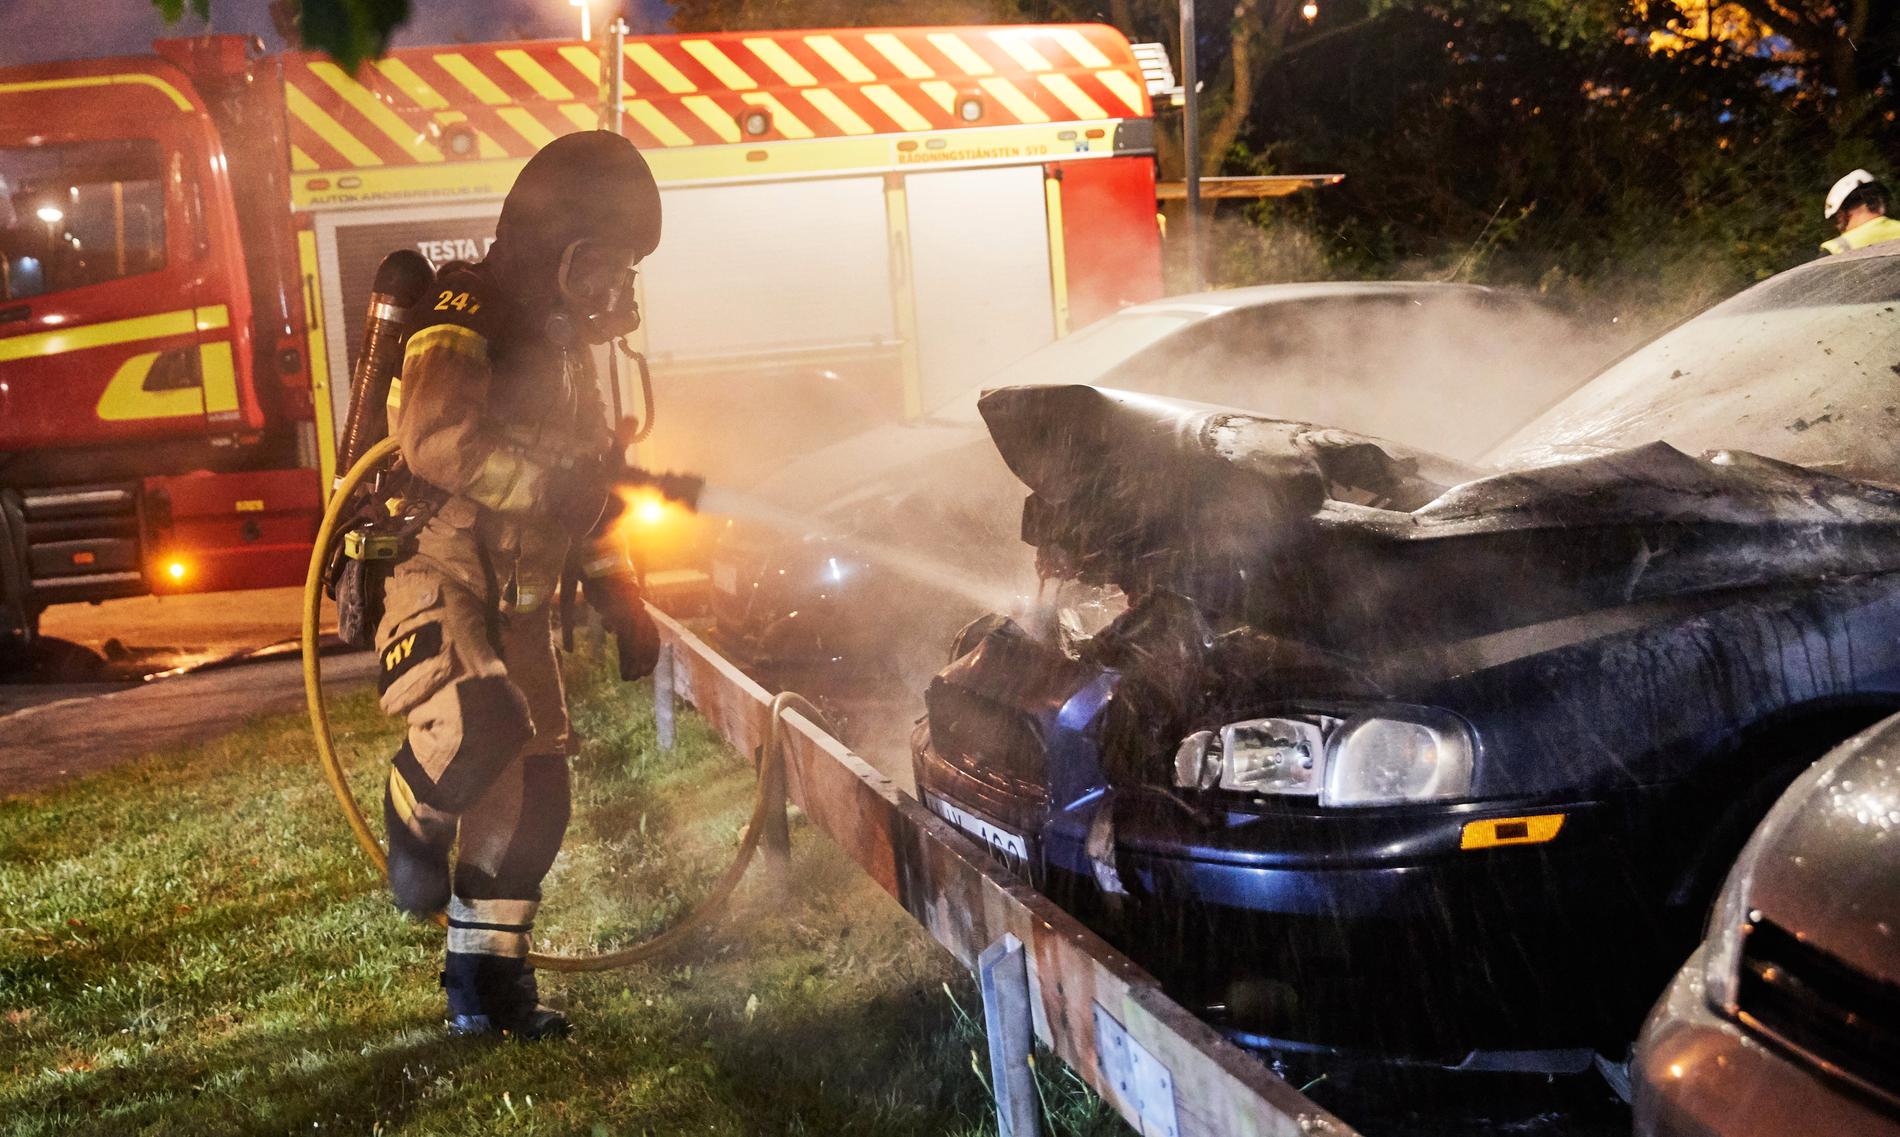 Bilbrand på Parternas gränd i Lund 25 juli i år, samtidigt som ytterligare två bilar brinner på Notariegränden ett par hundra meter bort.